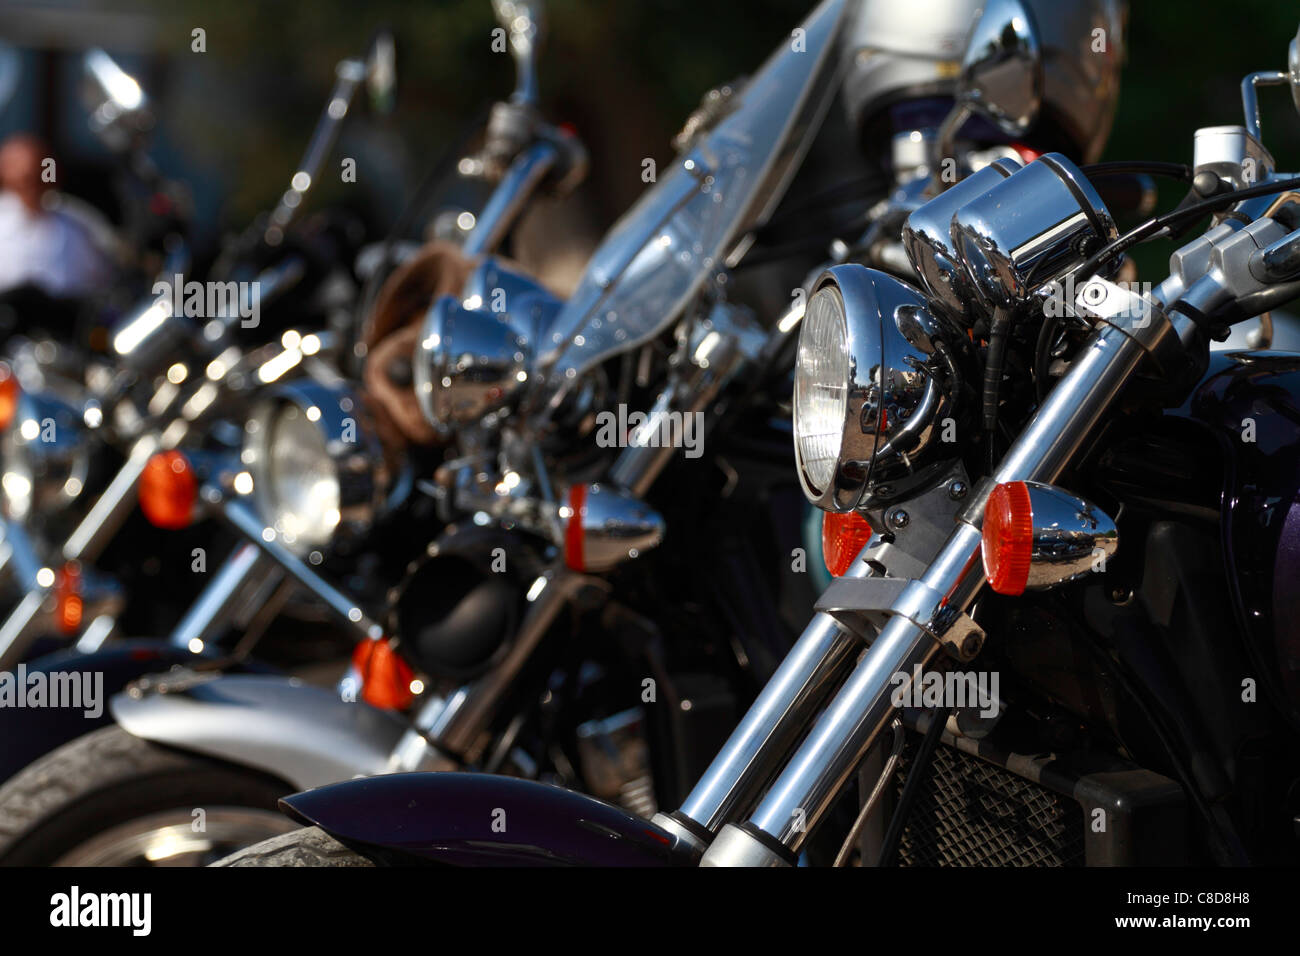 Custom bikes, headlight detail Stock Photo